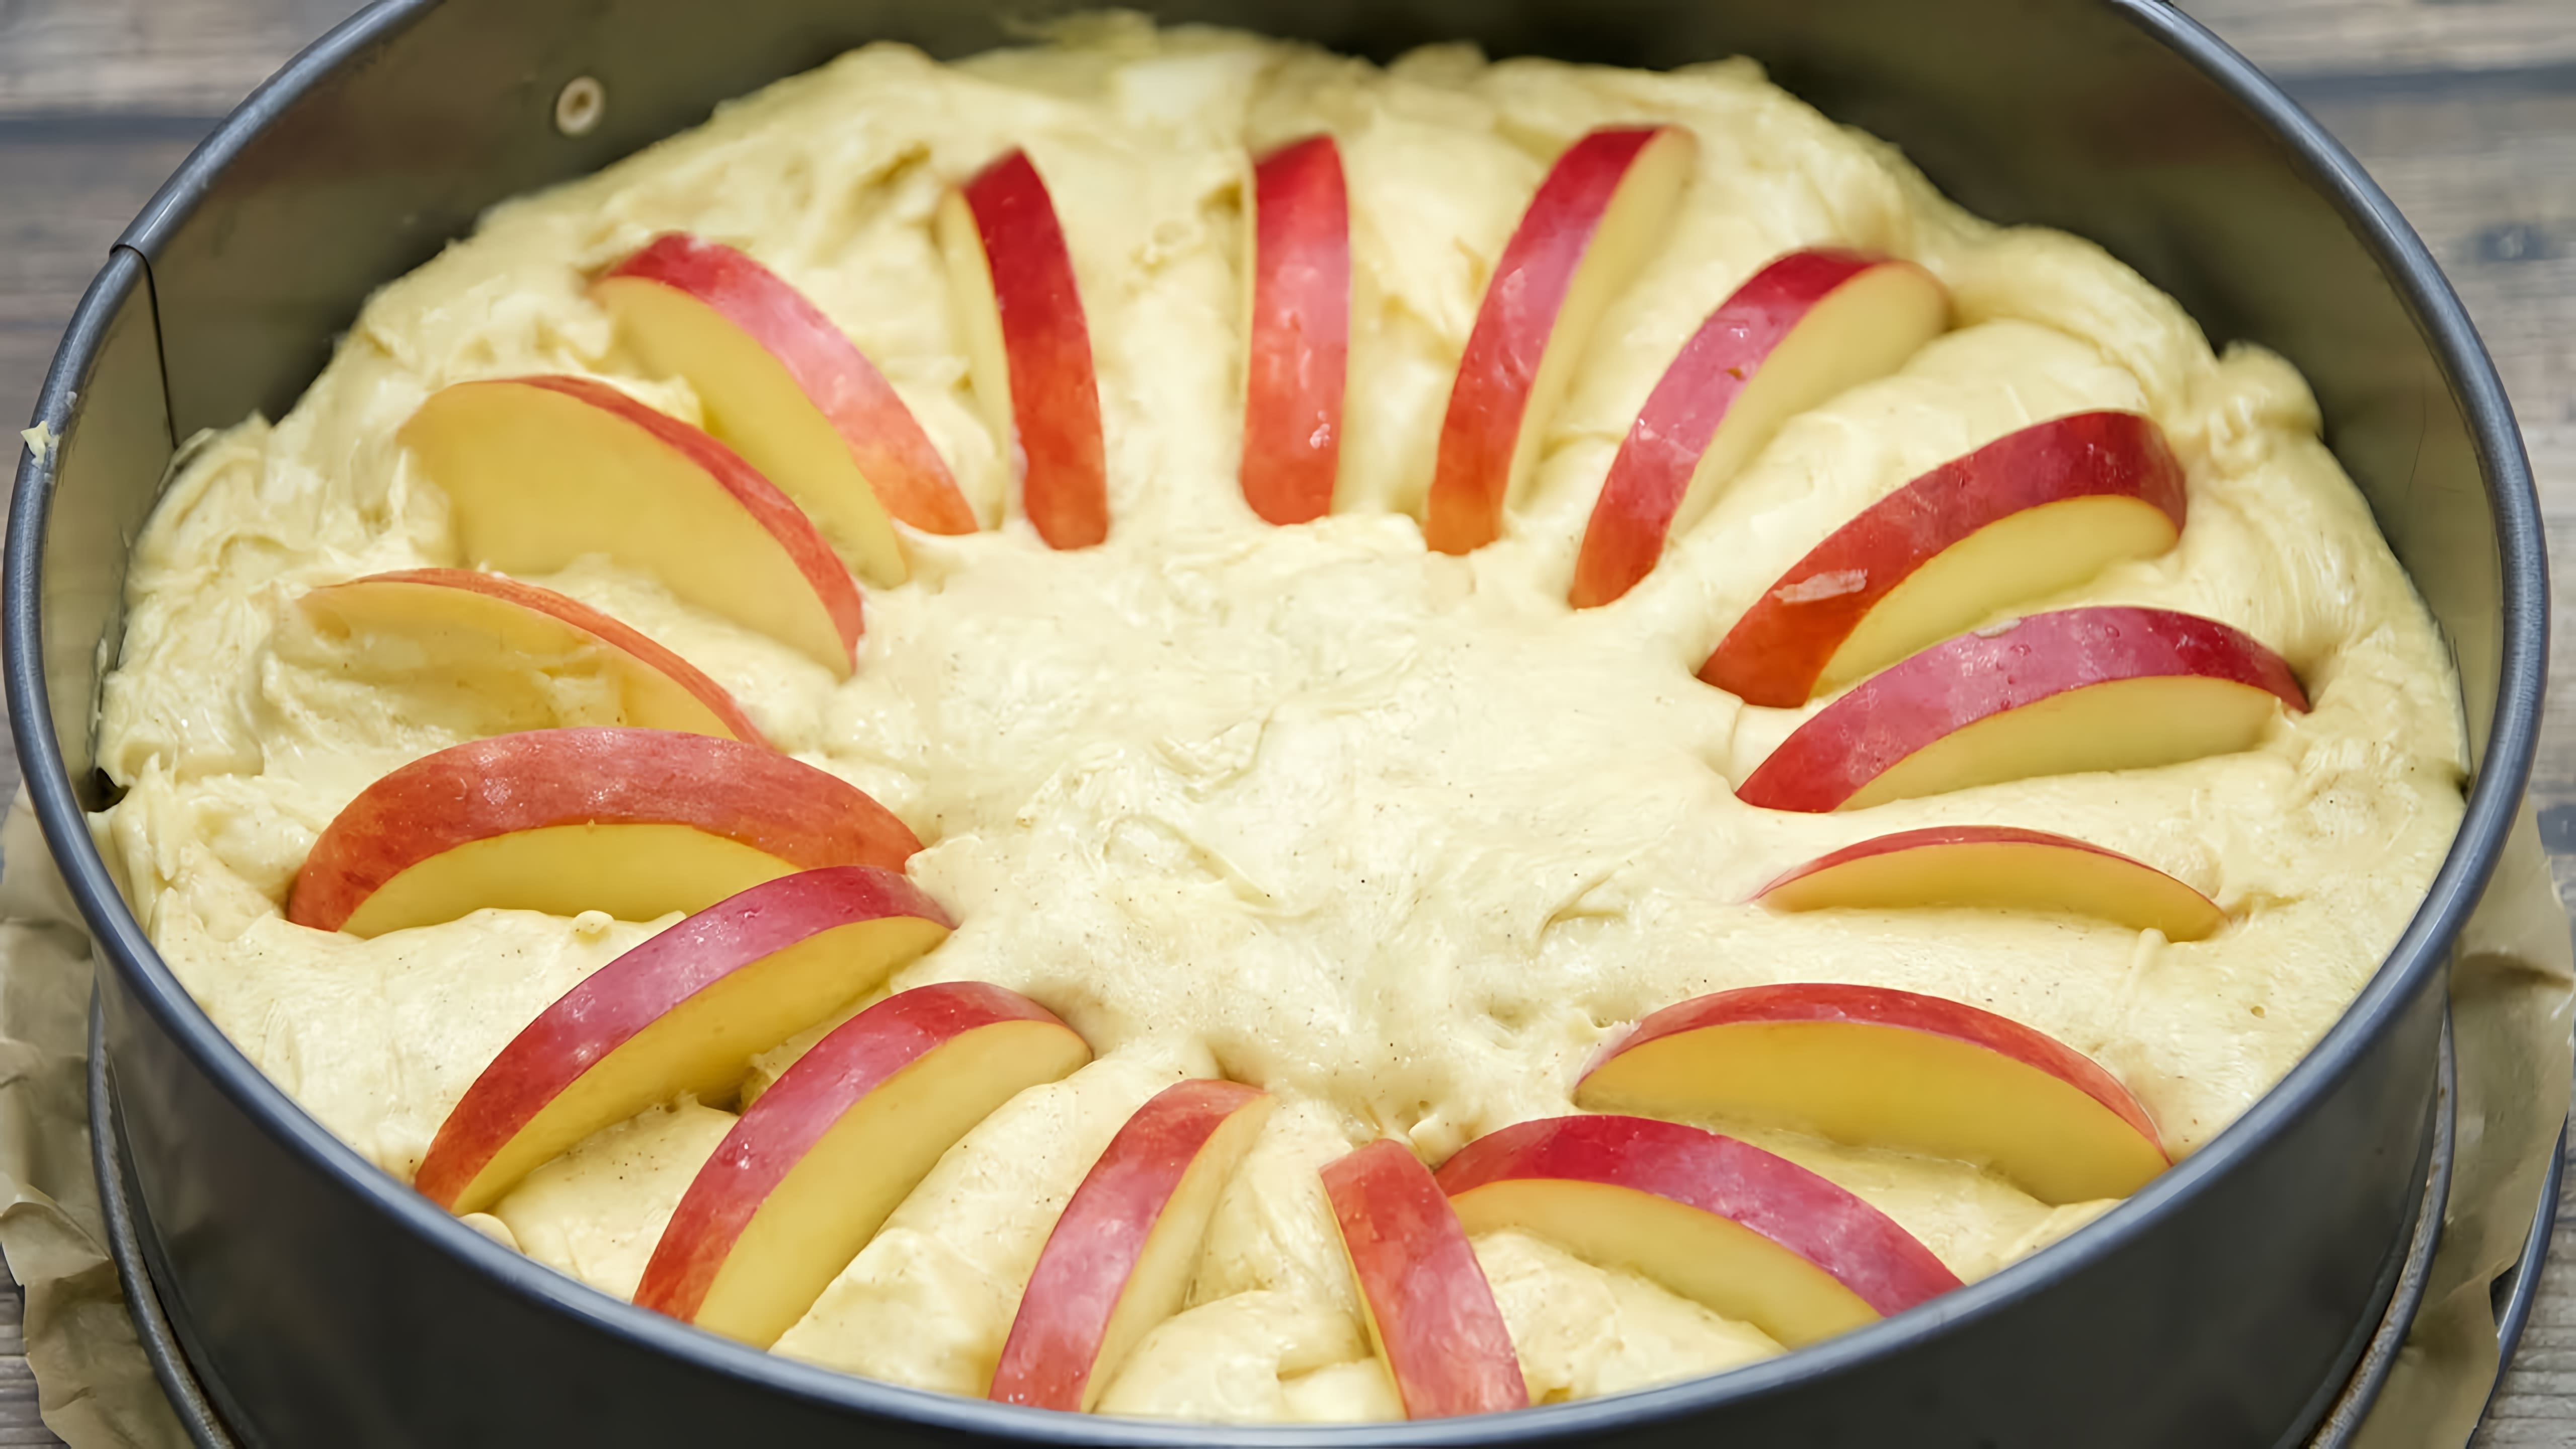 В этом видео демонстрируется рецепт яблочного медового пирога